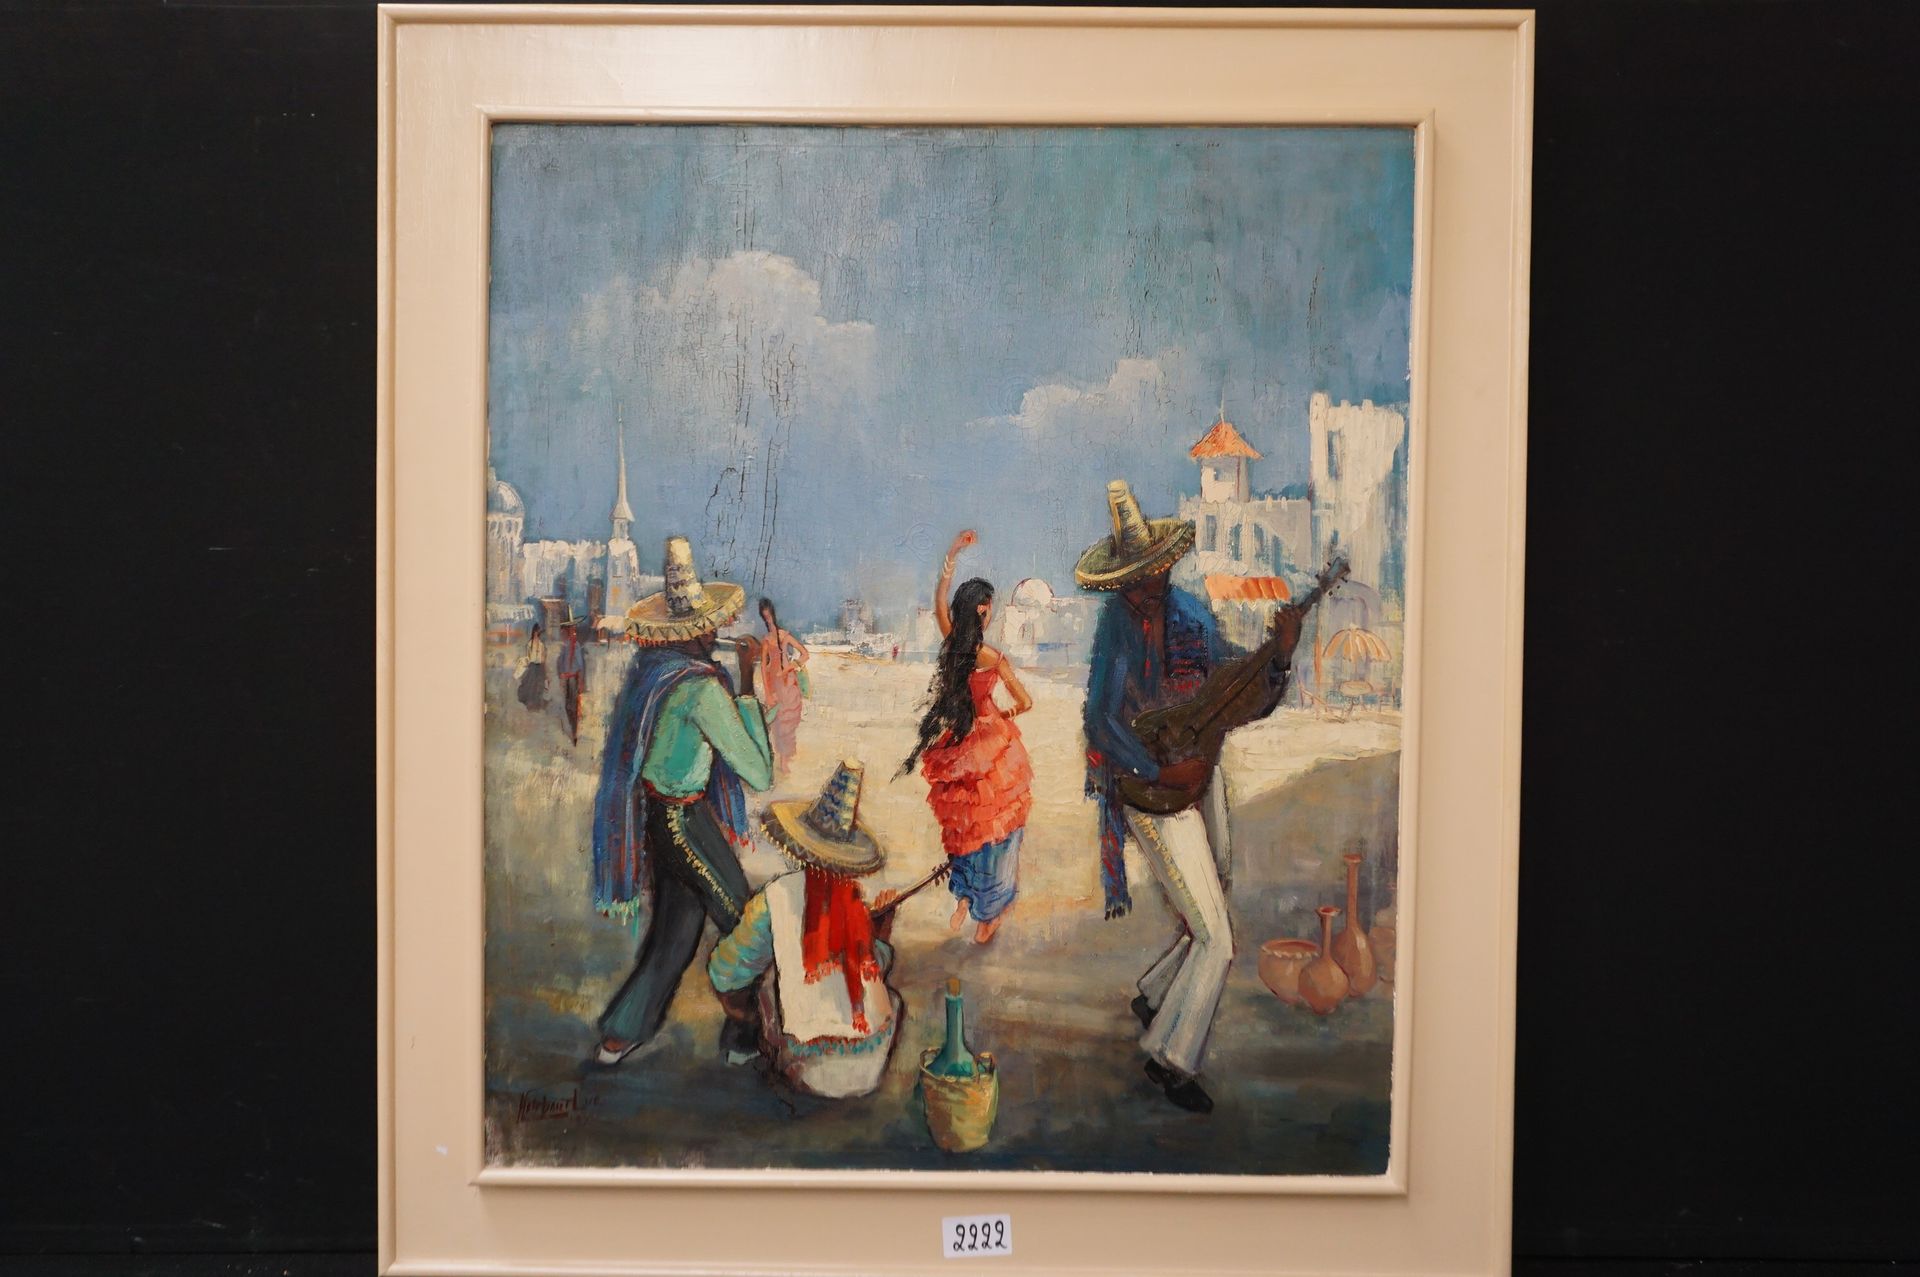 LUC HEIRBAUT (1919 - 2014) "墨西哥音乐家" - 布面油画 - 已签名 - 96 x 84 cm